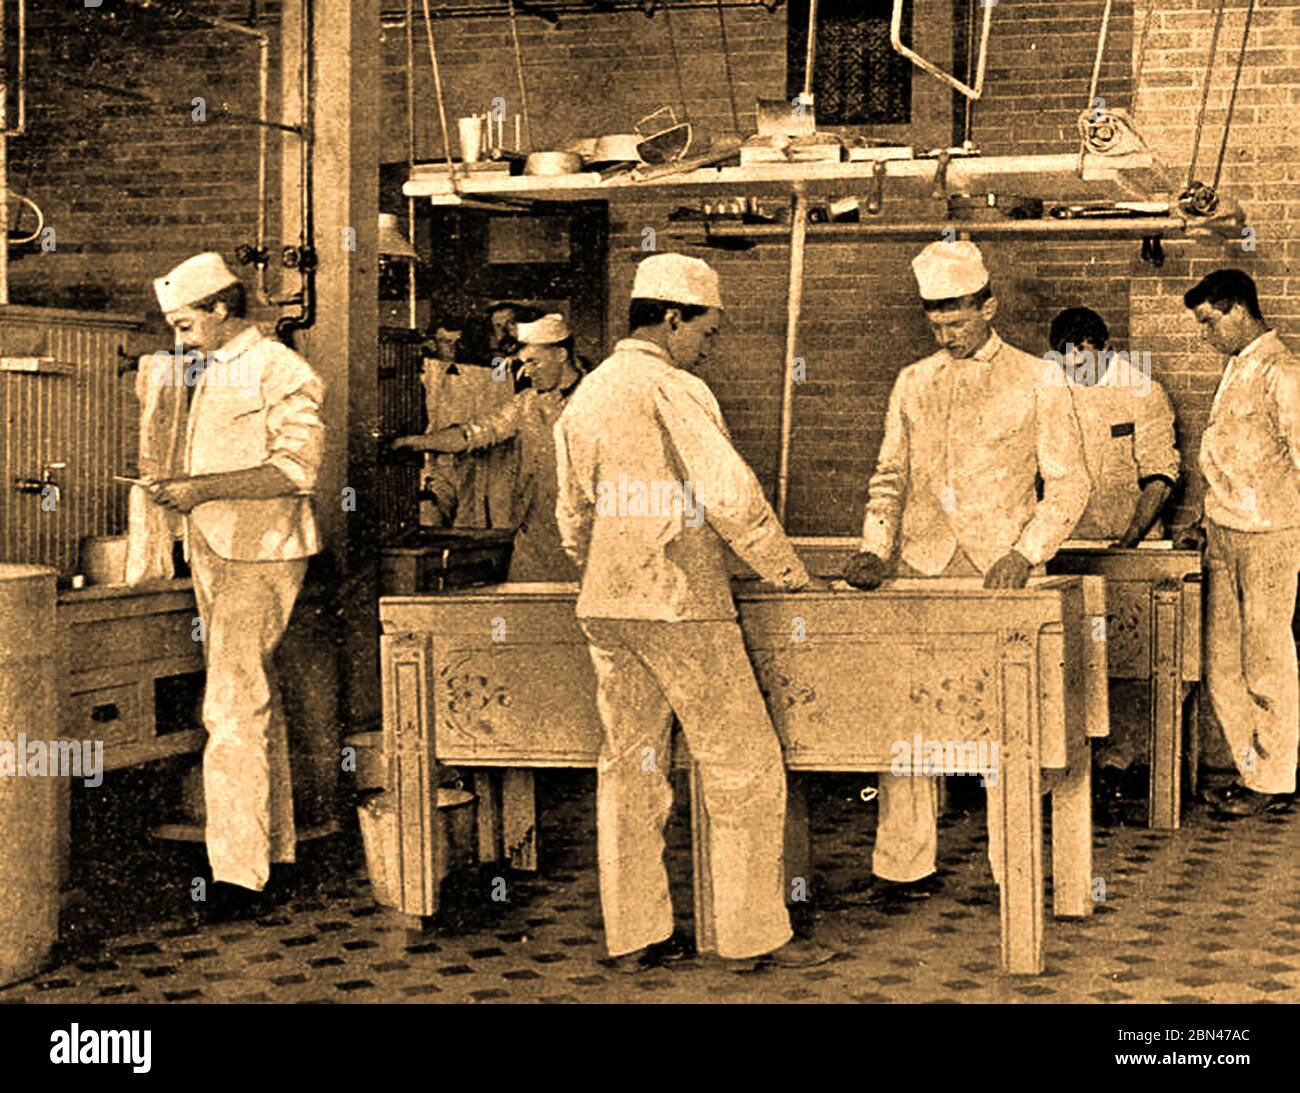 Industria casearia in Gran Bretagna - UN caseificio britannico che produce formaggio Cheddar a metà del 1890. Foto Stock